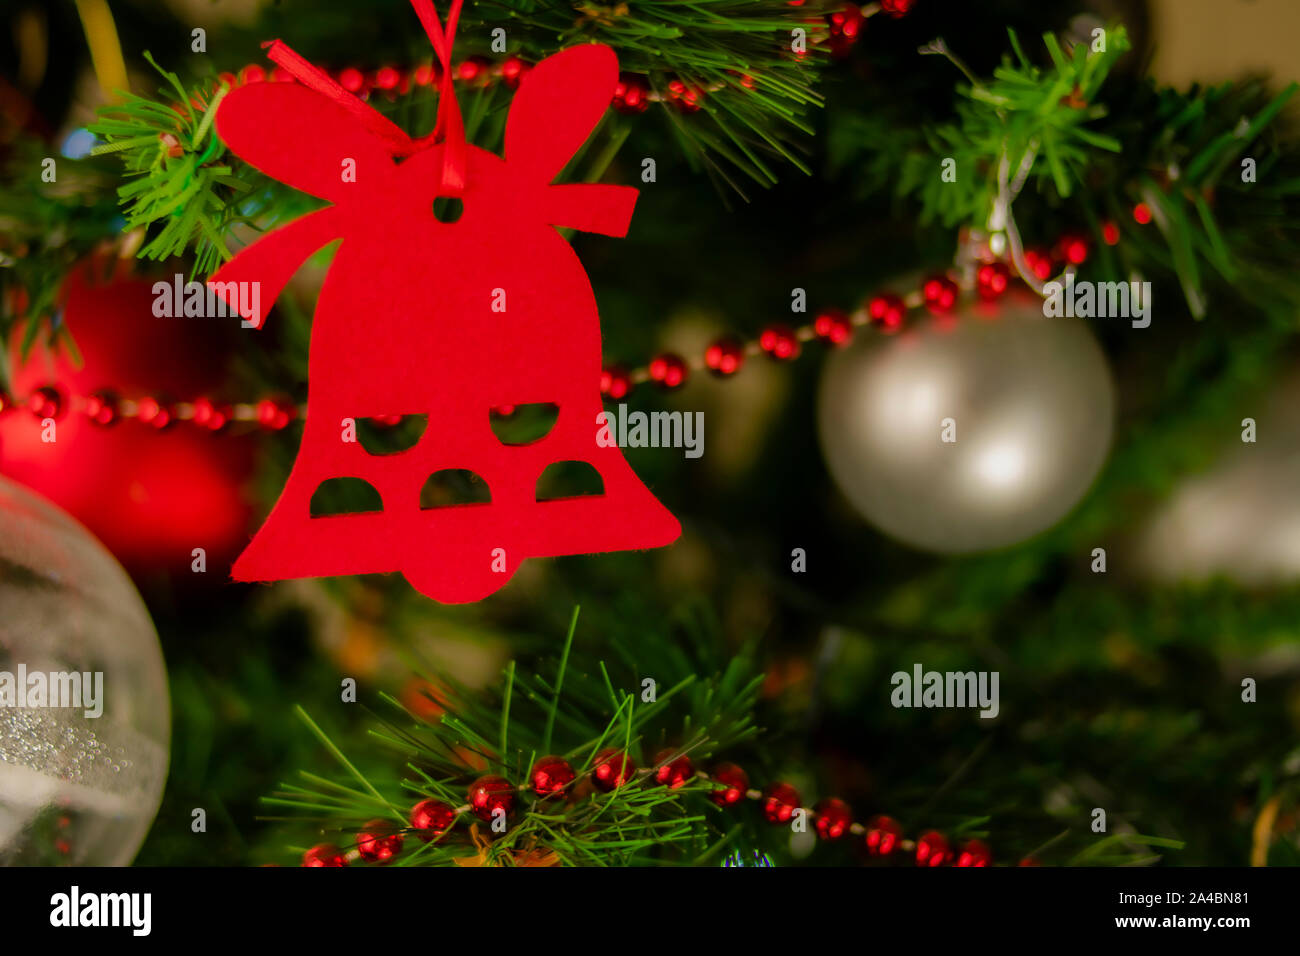 campana navideña cuelga de la rama del abeto de navidad entre bolas de colores plateados y rojos y una cadena de bolas rojas pequeñas. Stock Photo